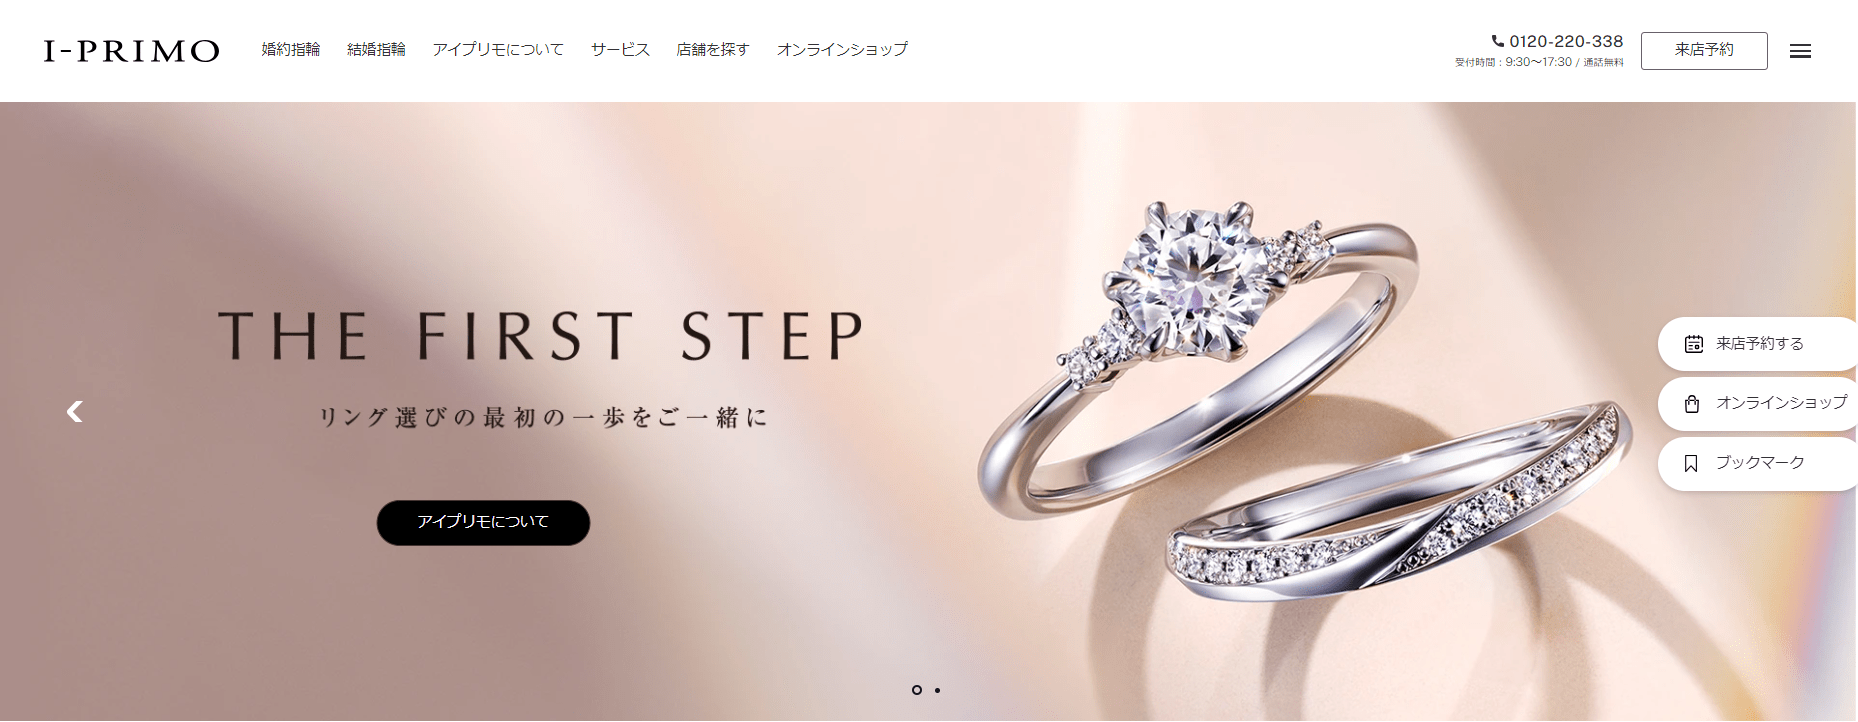 9号】I-PRIMO アイプリモ 婚約指輪 エンゲージリング ダイヤモンド